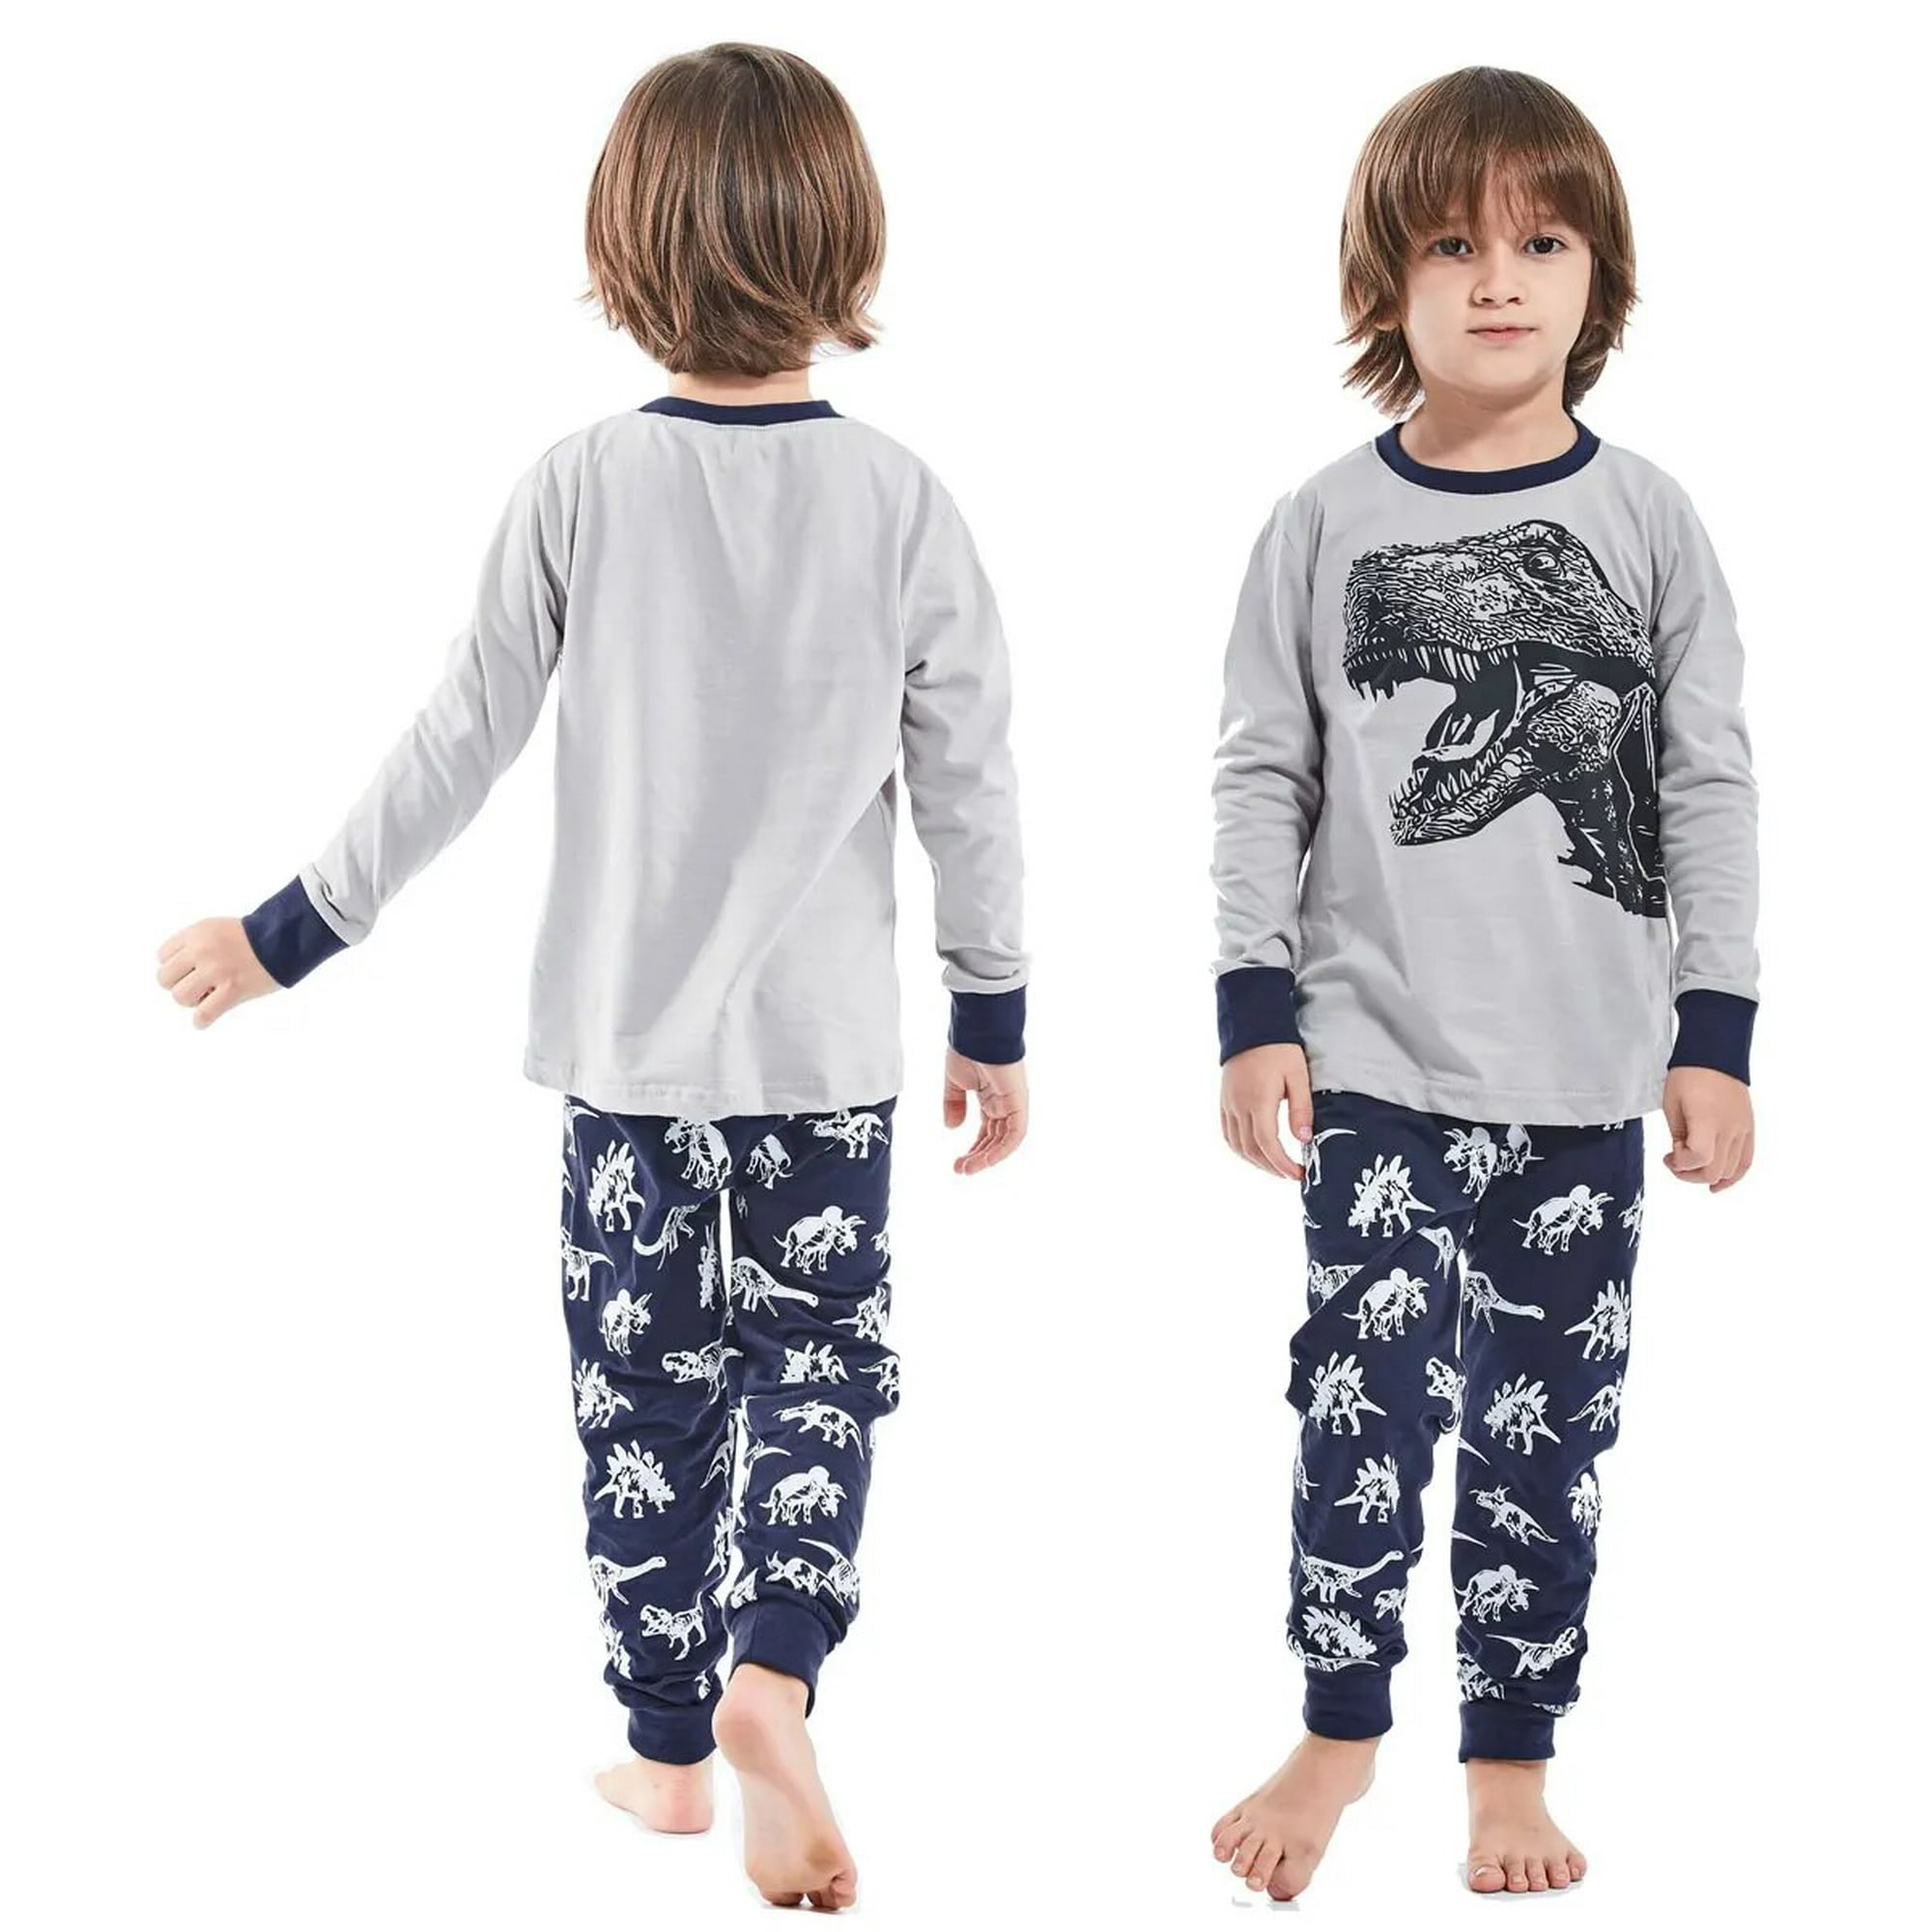 Popshion Pijamas para niños 100% algodón, ropa de verano para niños,  planeta, dinosaurio, ropa de dormir, conjuntos cortos para niños de 2 a 10  años